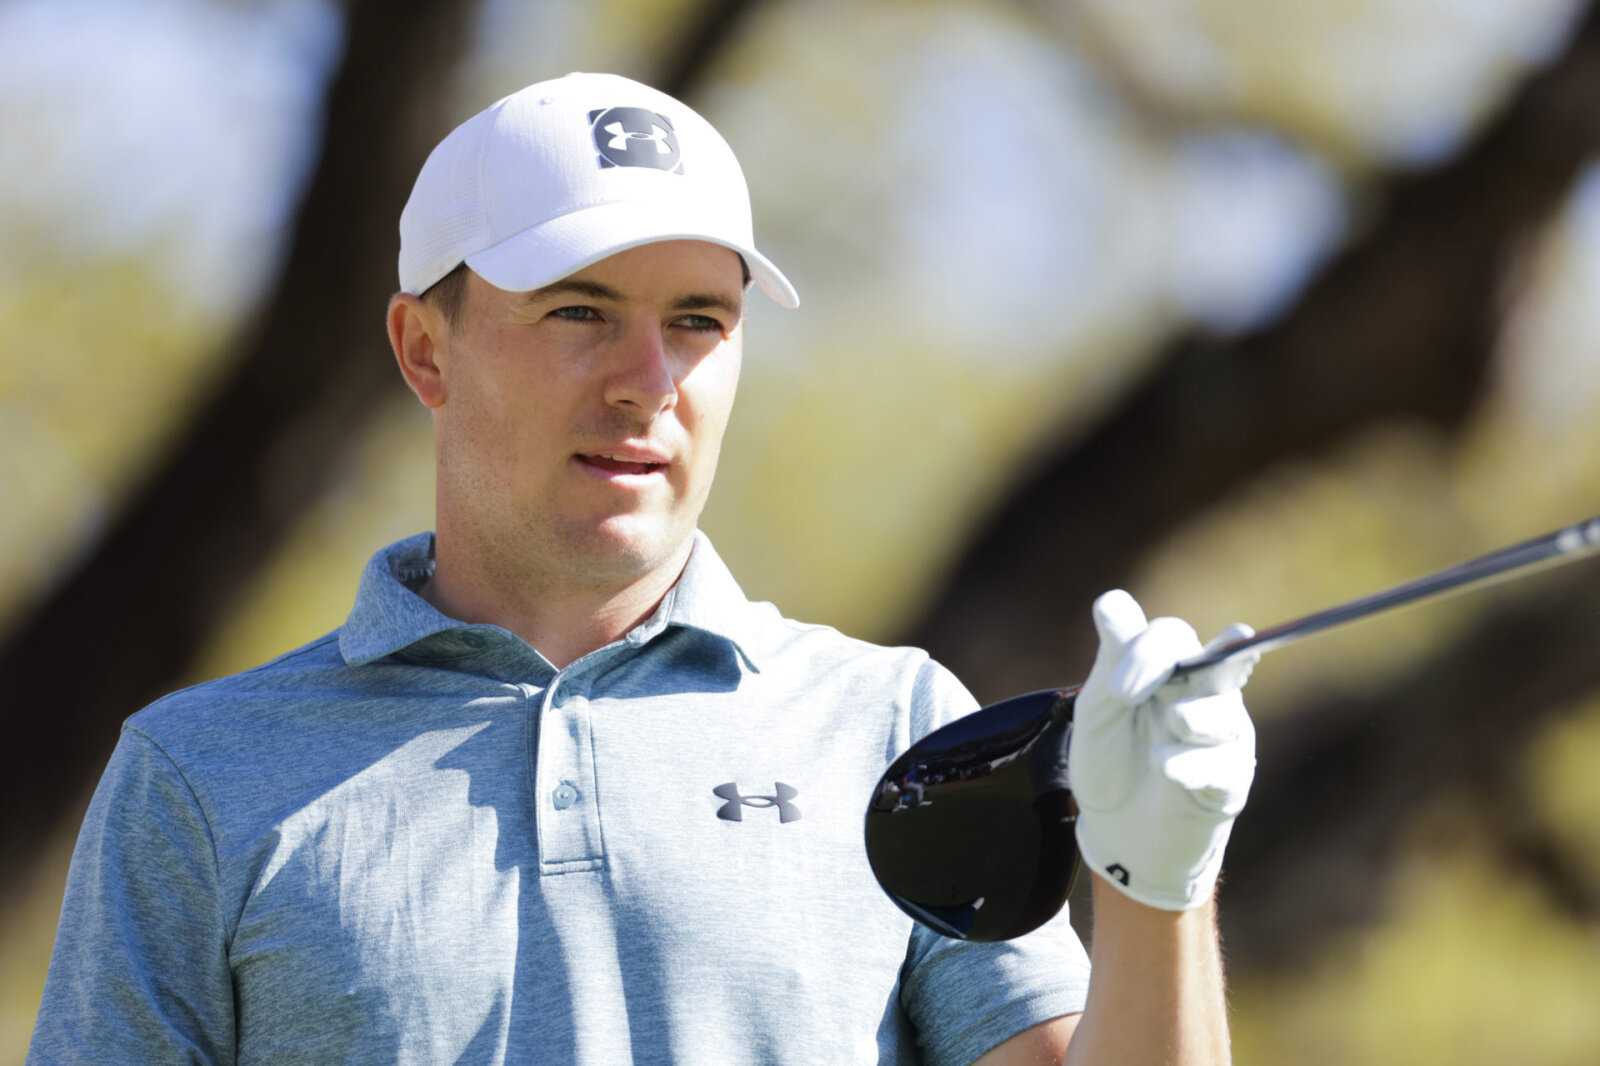 Calendrier de la tournée Jordan Spieth PGA : quand jouera-t-il son prochain tournoi ?